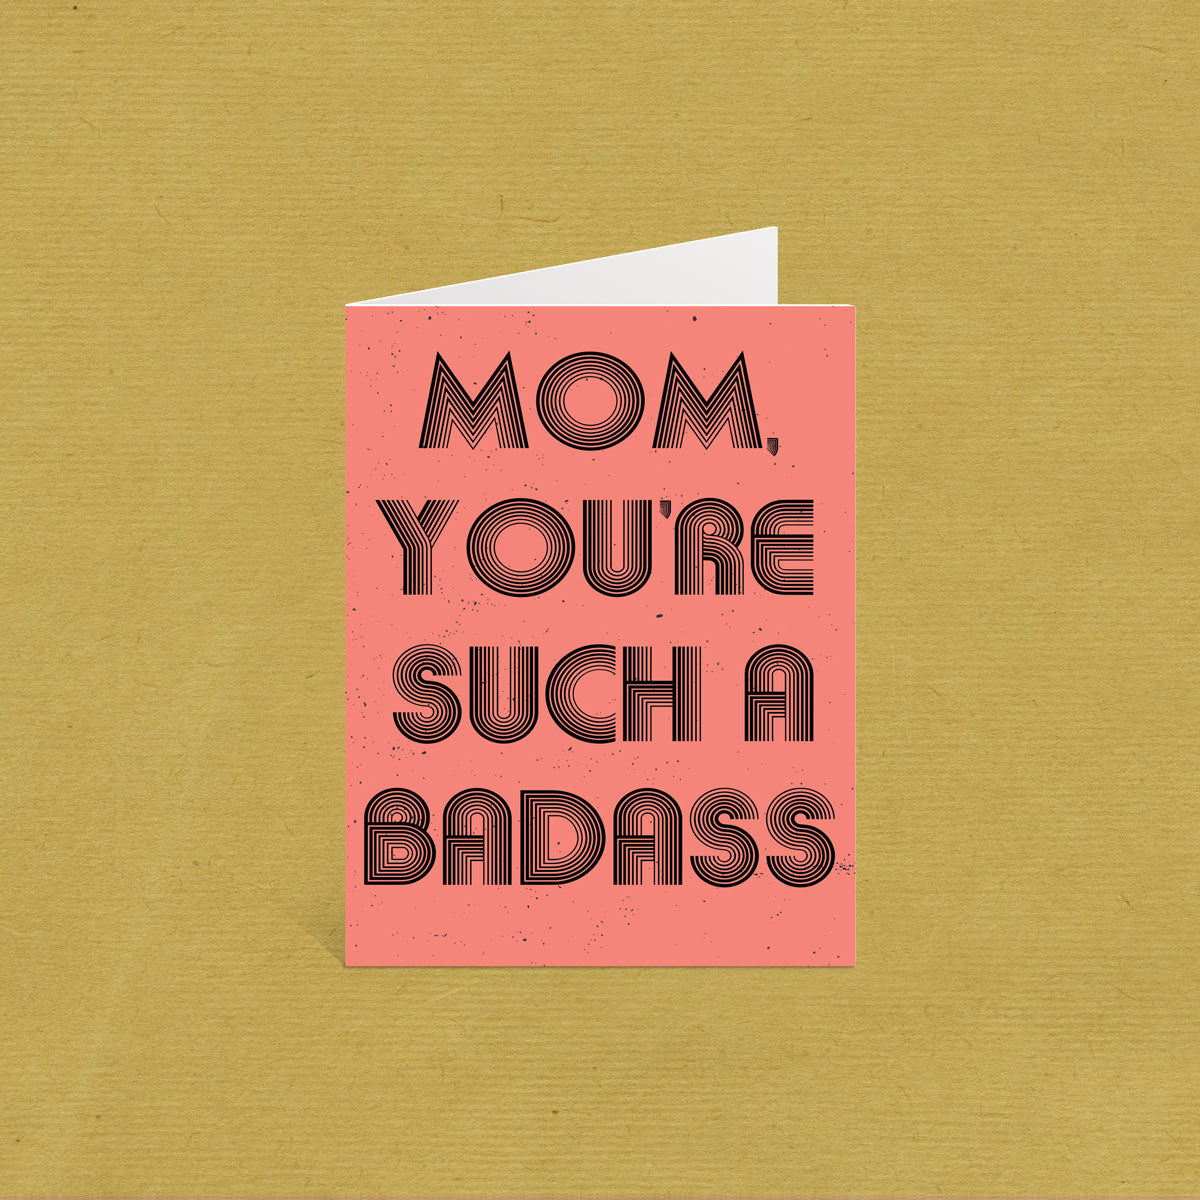 You'Re a Mother F*Cking Badass: Motivational & Inspirational Swear